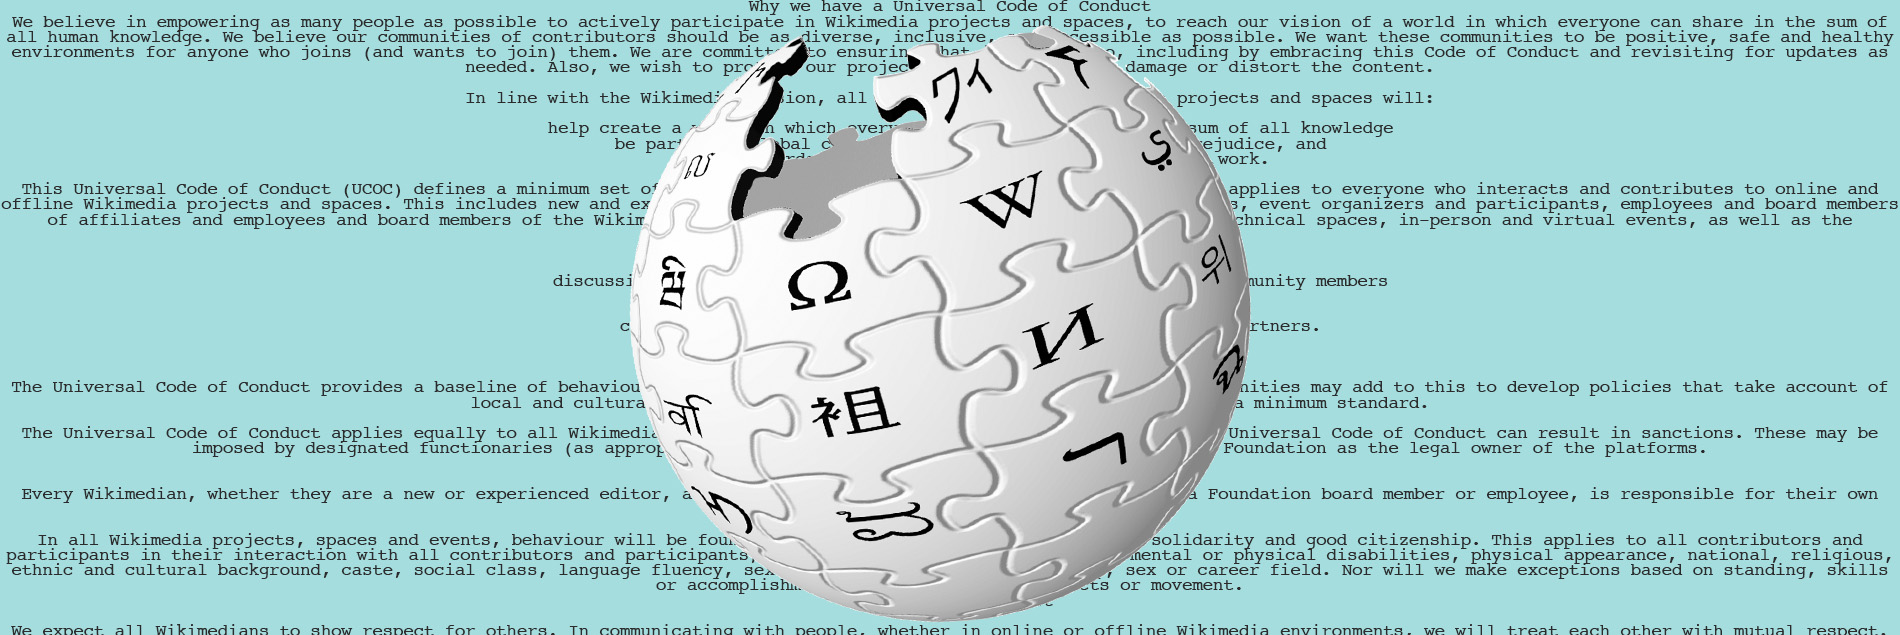 wikipedia codigo de conducta universal